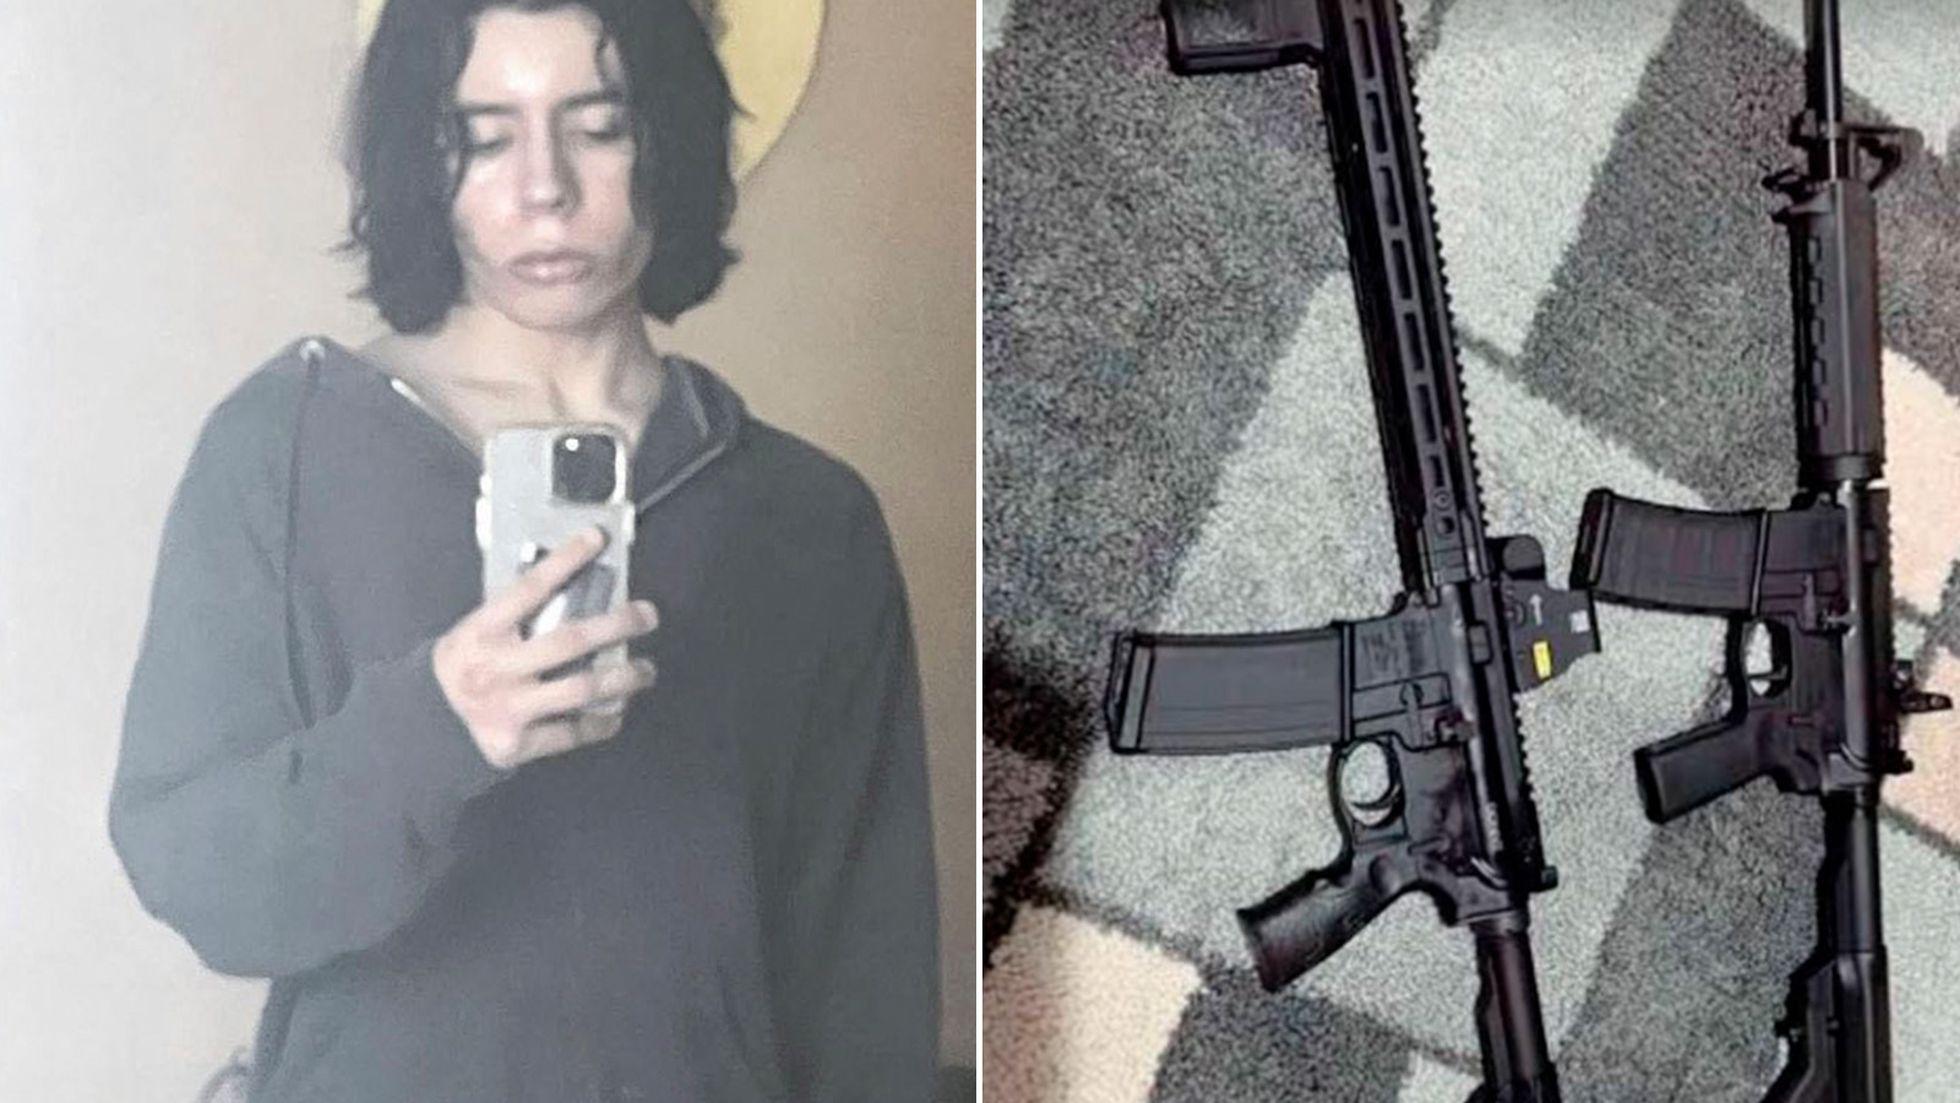 Salvador publicó en Instagram imágenes de sus armas y etiquetó a una mujer con la que intercambió varios mensajes informándole que estaba a punto de hacer algo.